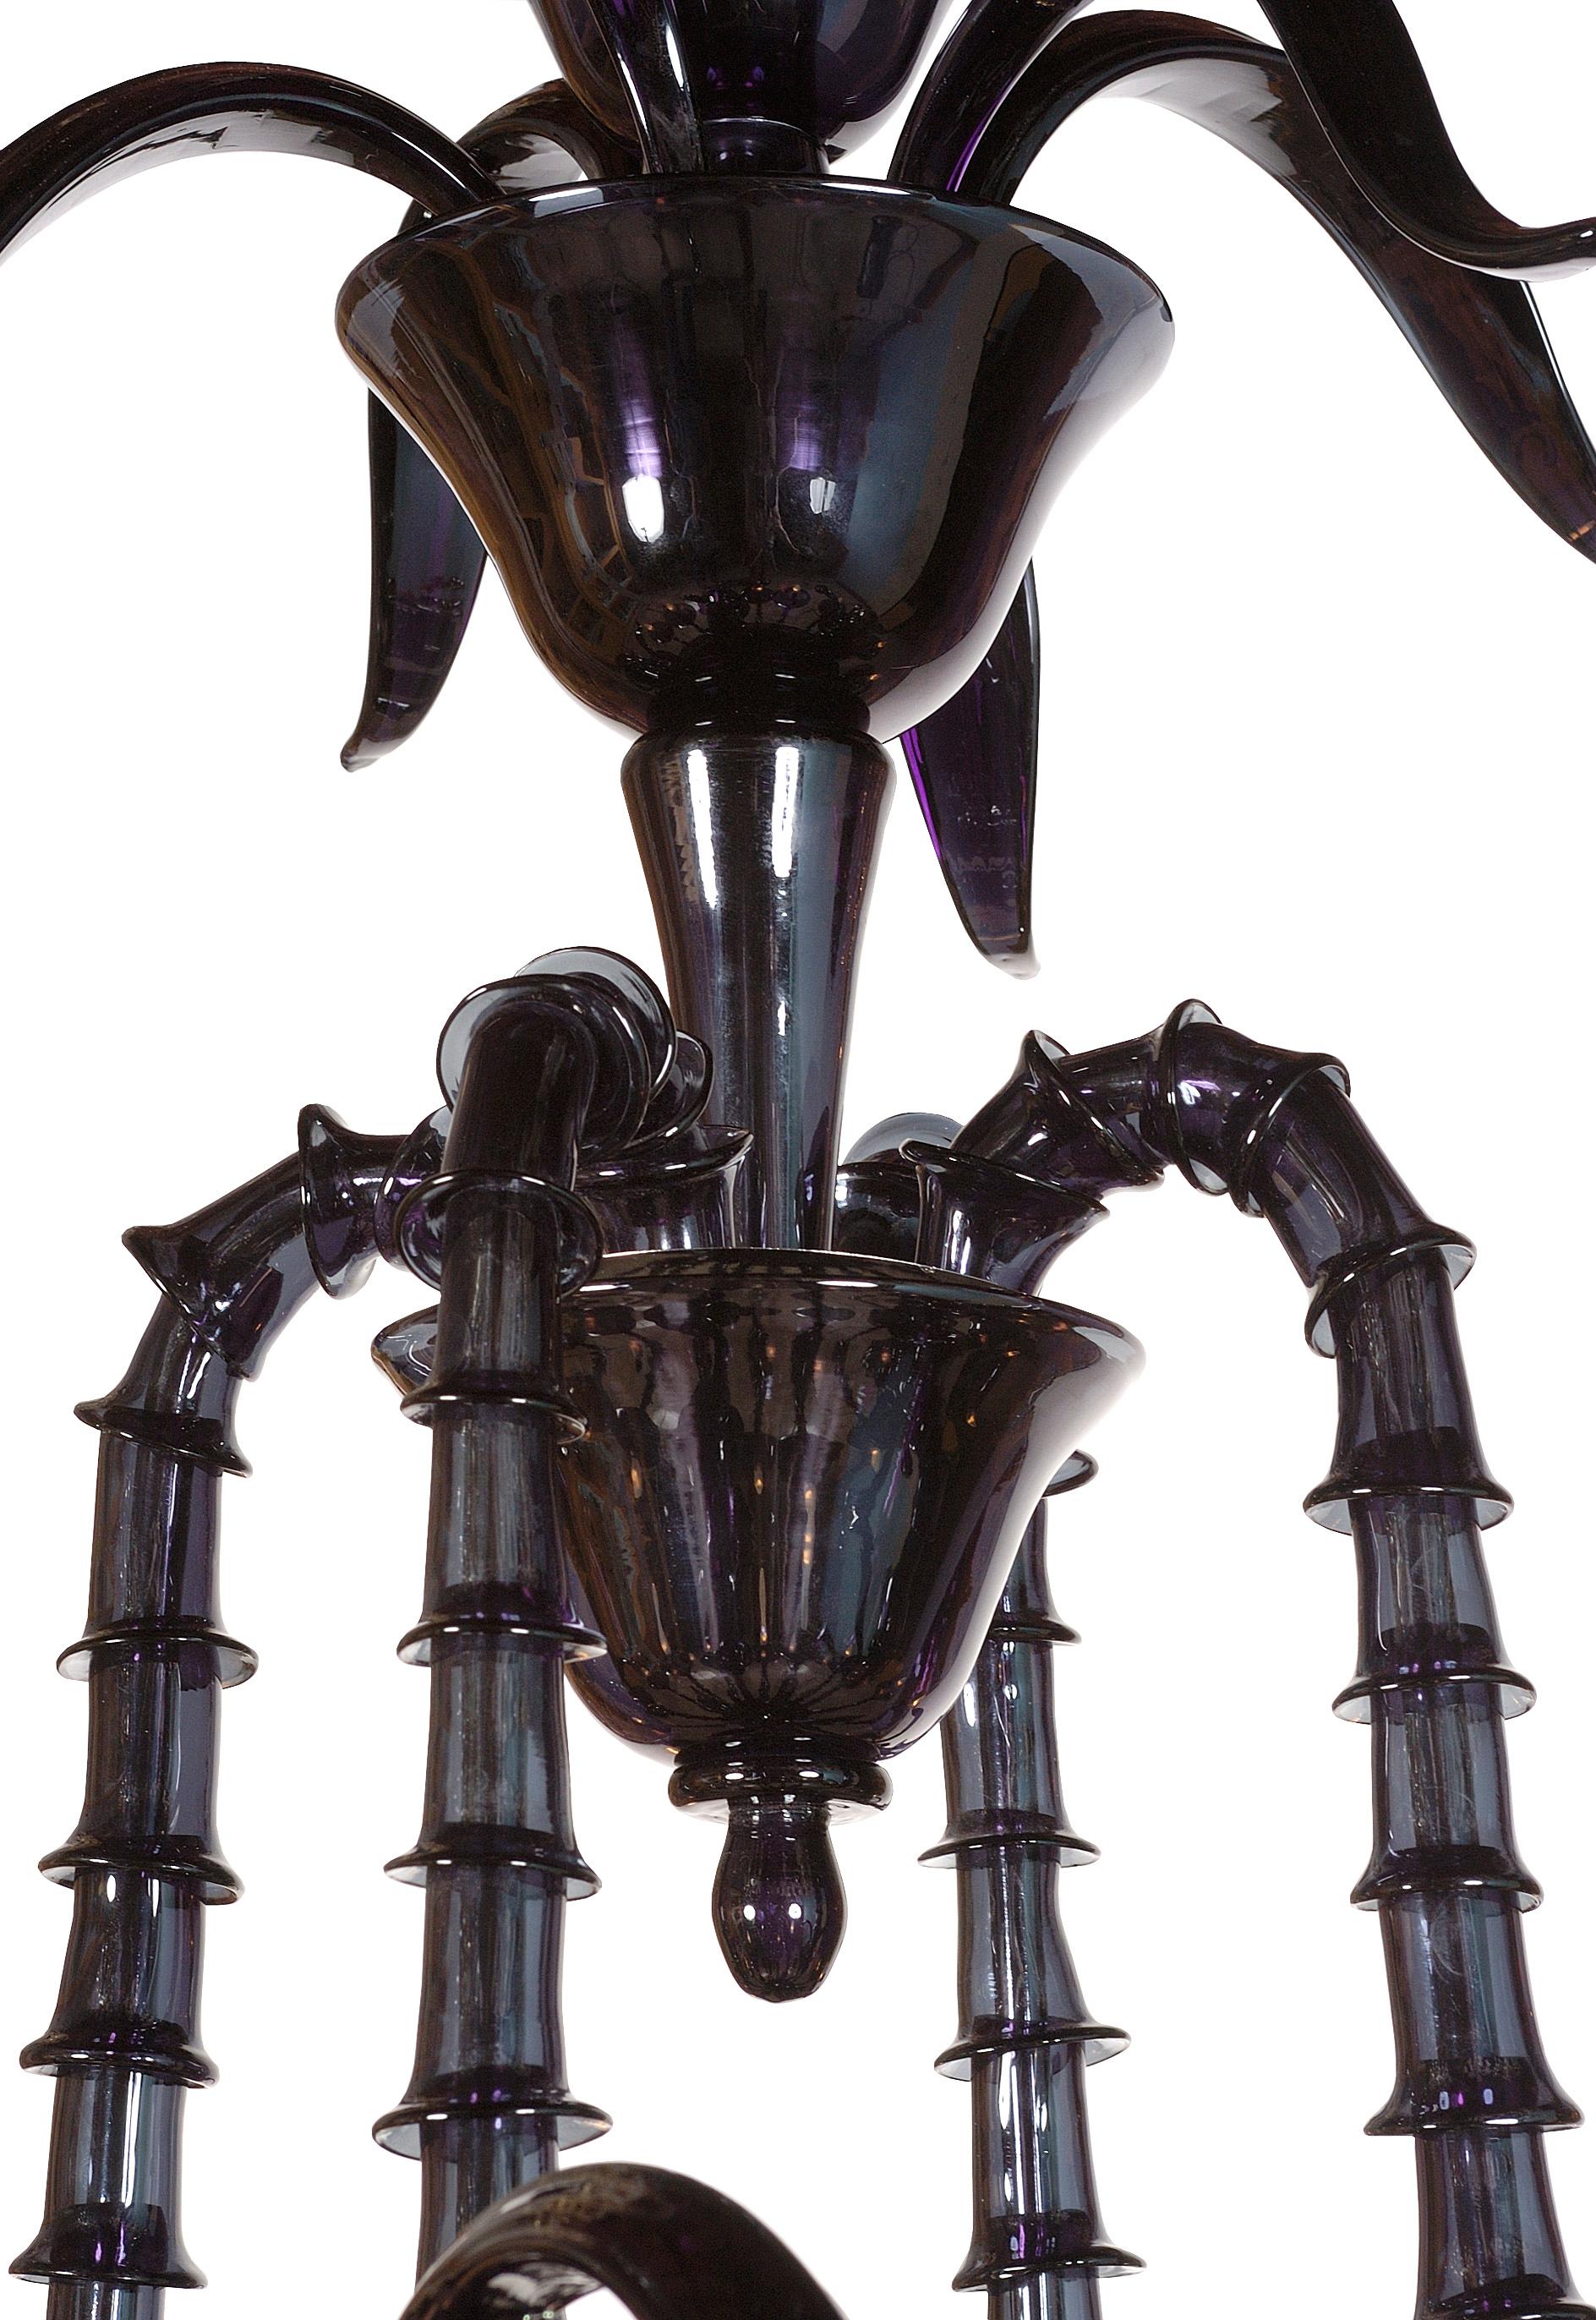 Descubre la elegancia intemporal de las lámparas de araña de estilo Rezzonico, uno de los diseños de araña más antiguos y queridos fabricados en Murano. La peculiaridad de este estilo es su exquisita composición, con cada brazo formado por piezas de